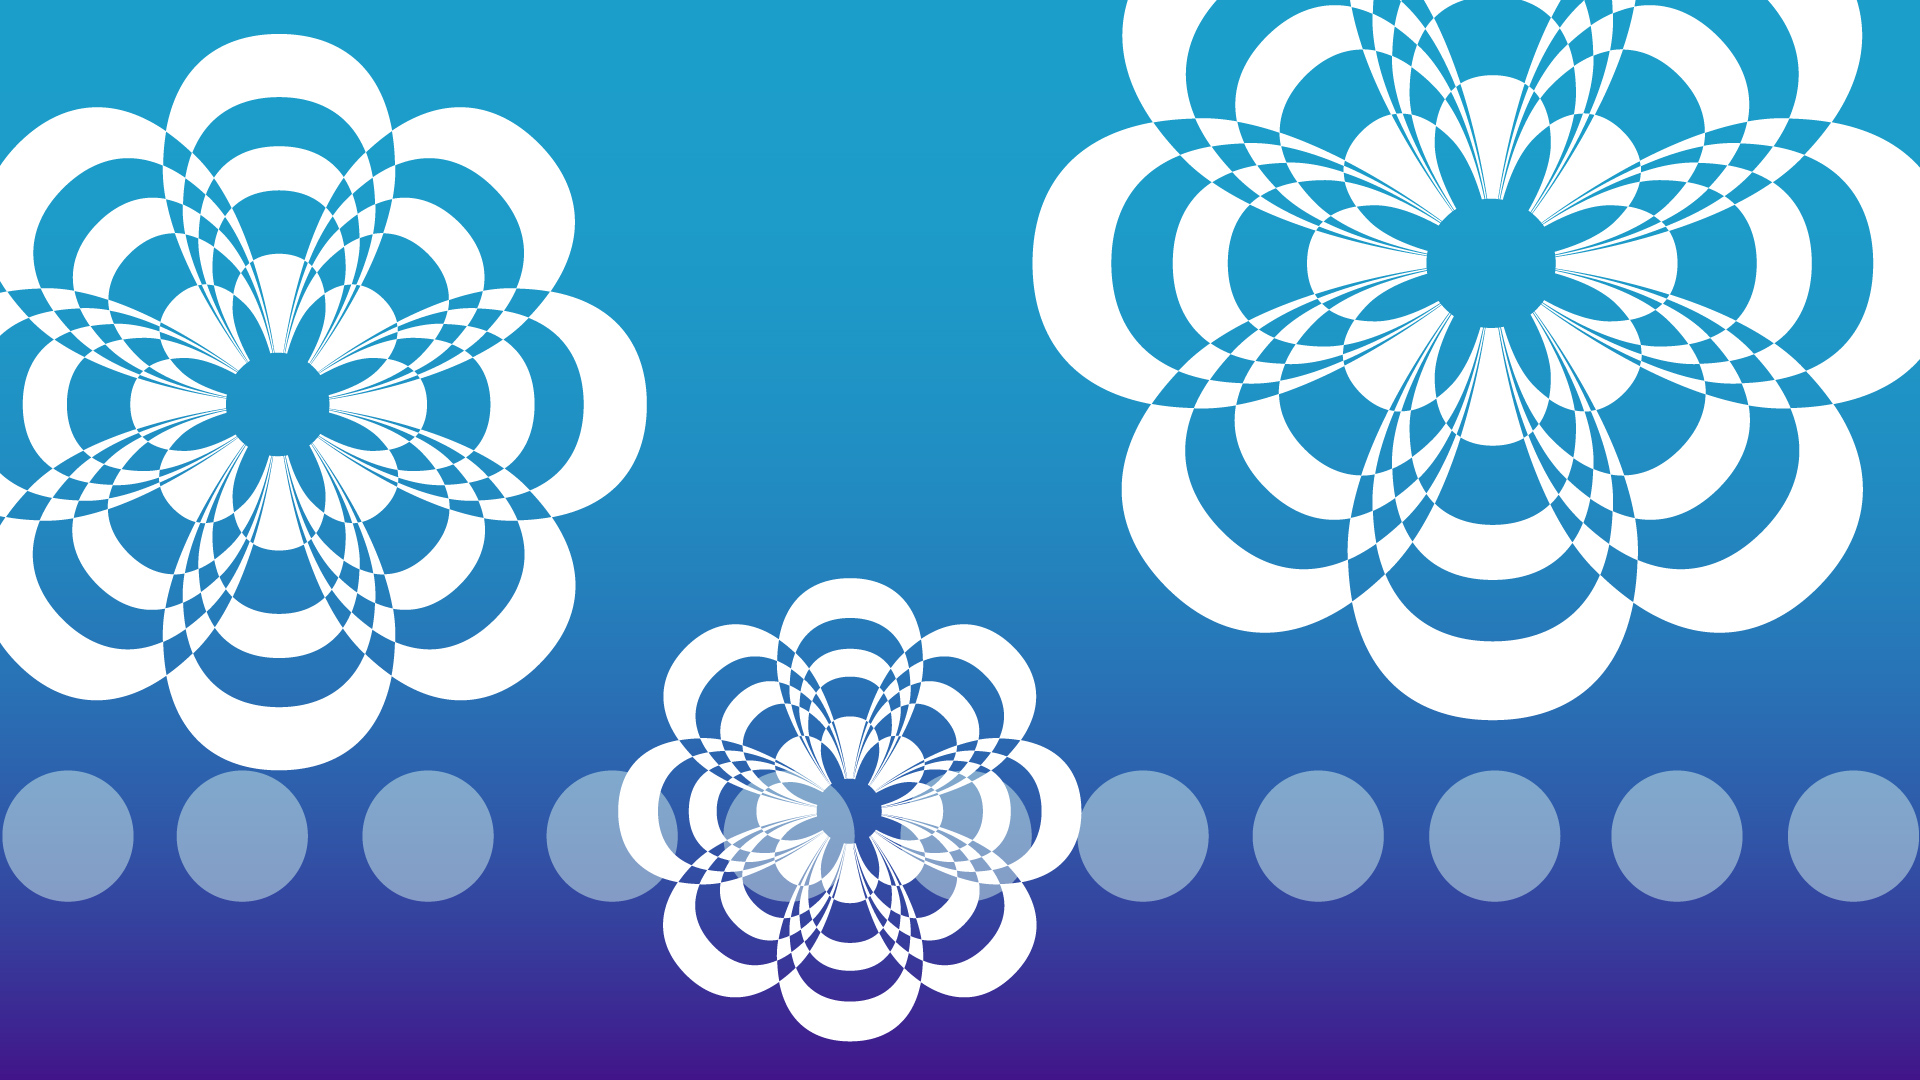 青いグラデーション背景の花の模様の壁紙・背景素材 1,920px×1,080px